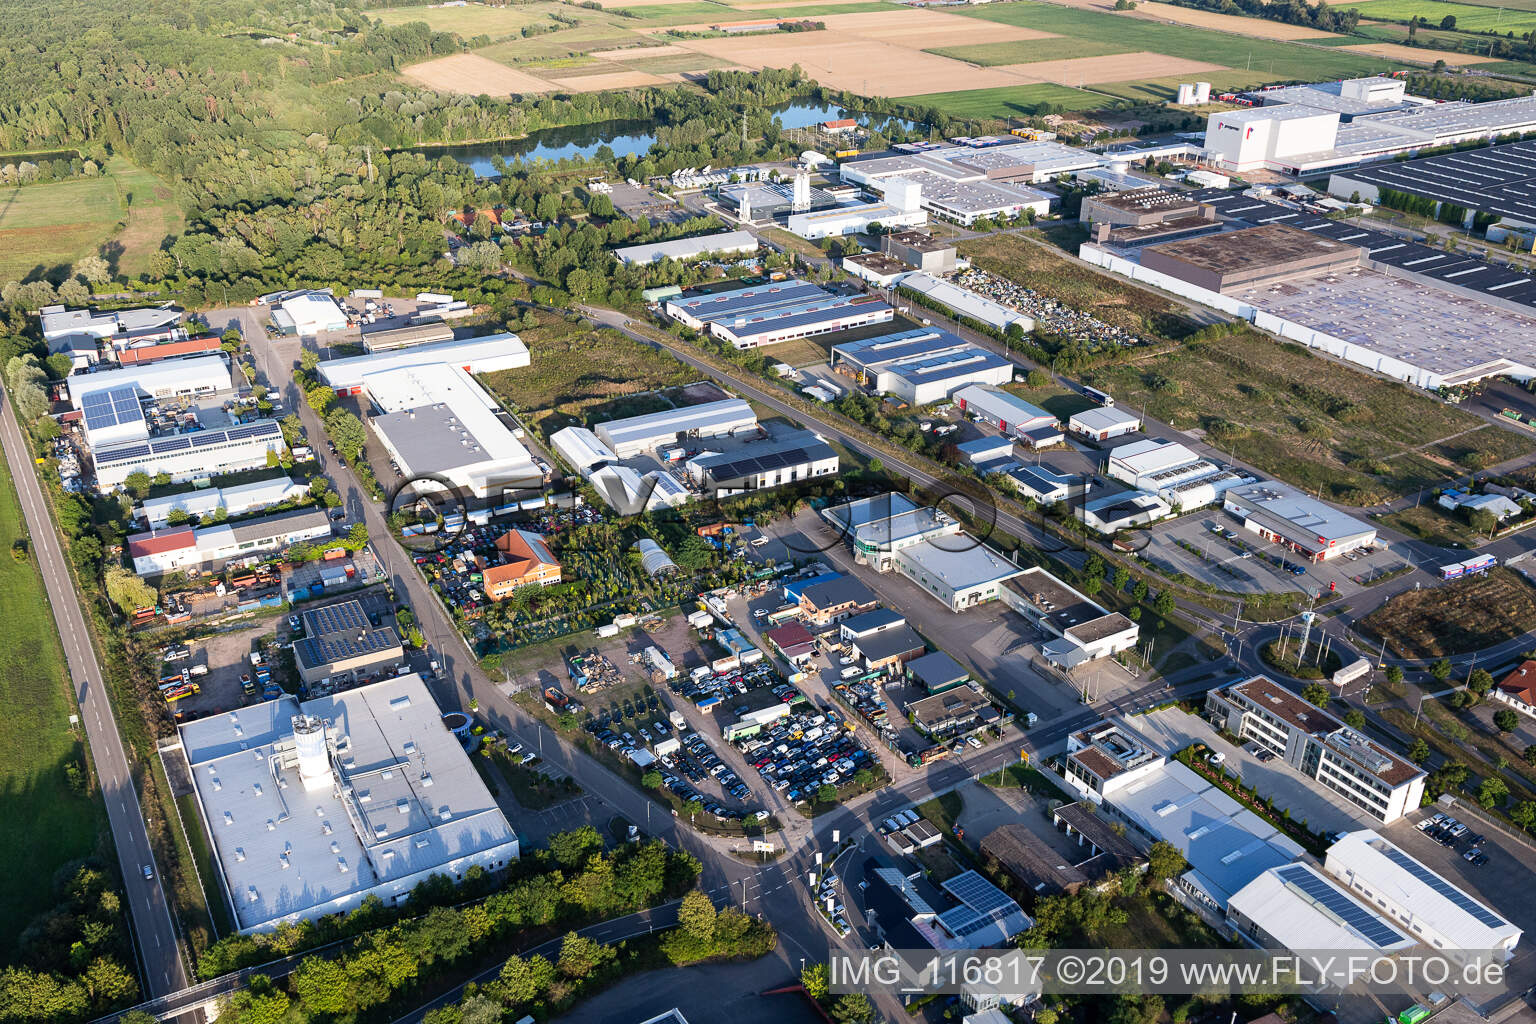 Vue aérienne de Zone industrielle dans les prés de bouleaux à Offenbach an der Queich dans le département Rhénanie-Palatinat, Allemagne